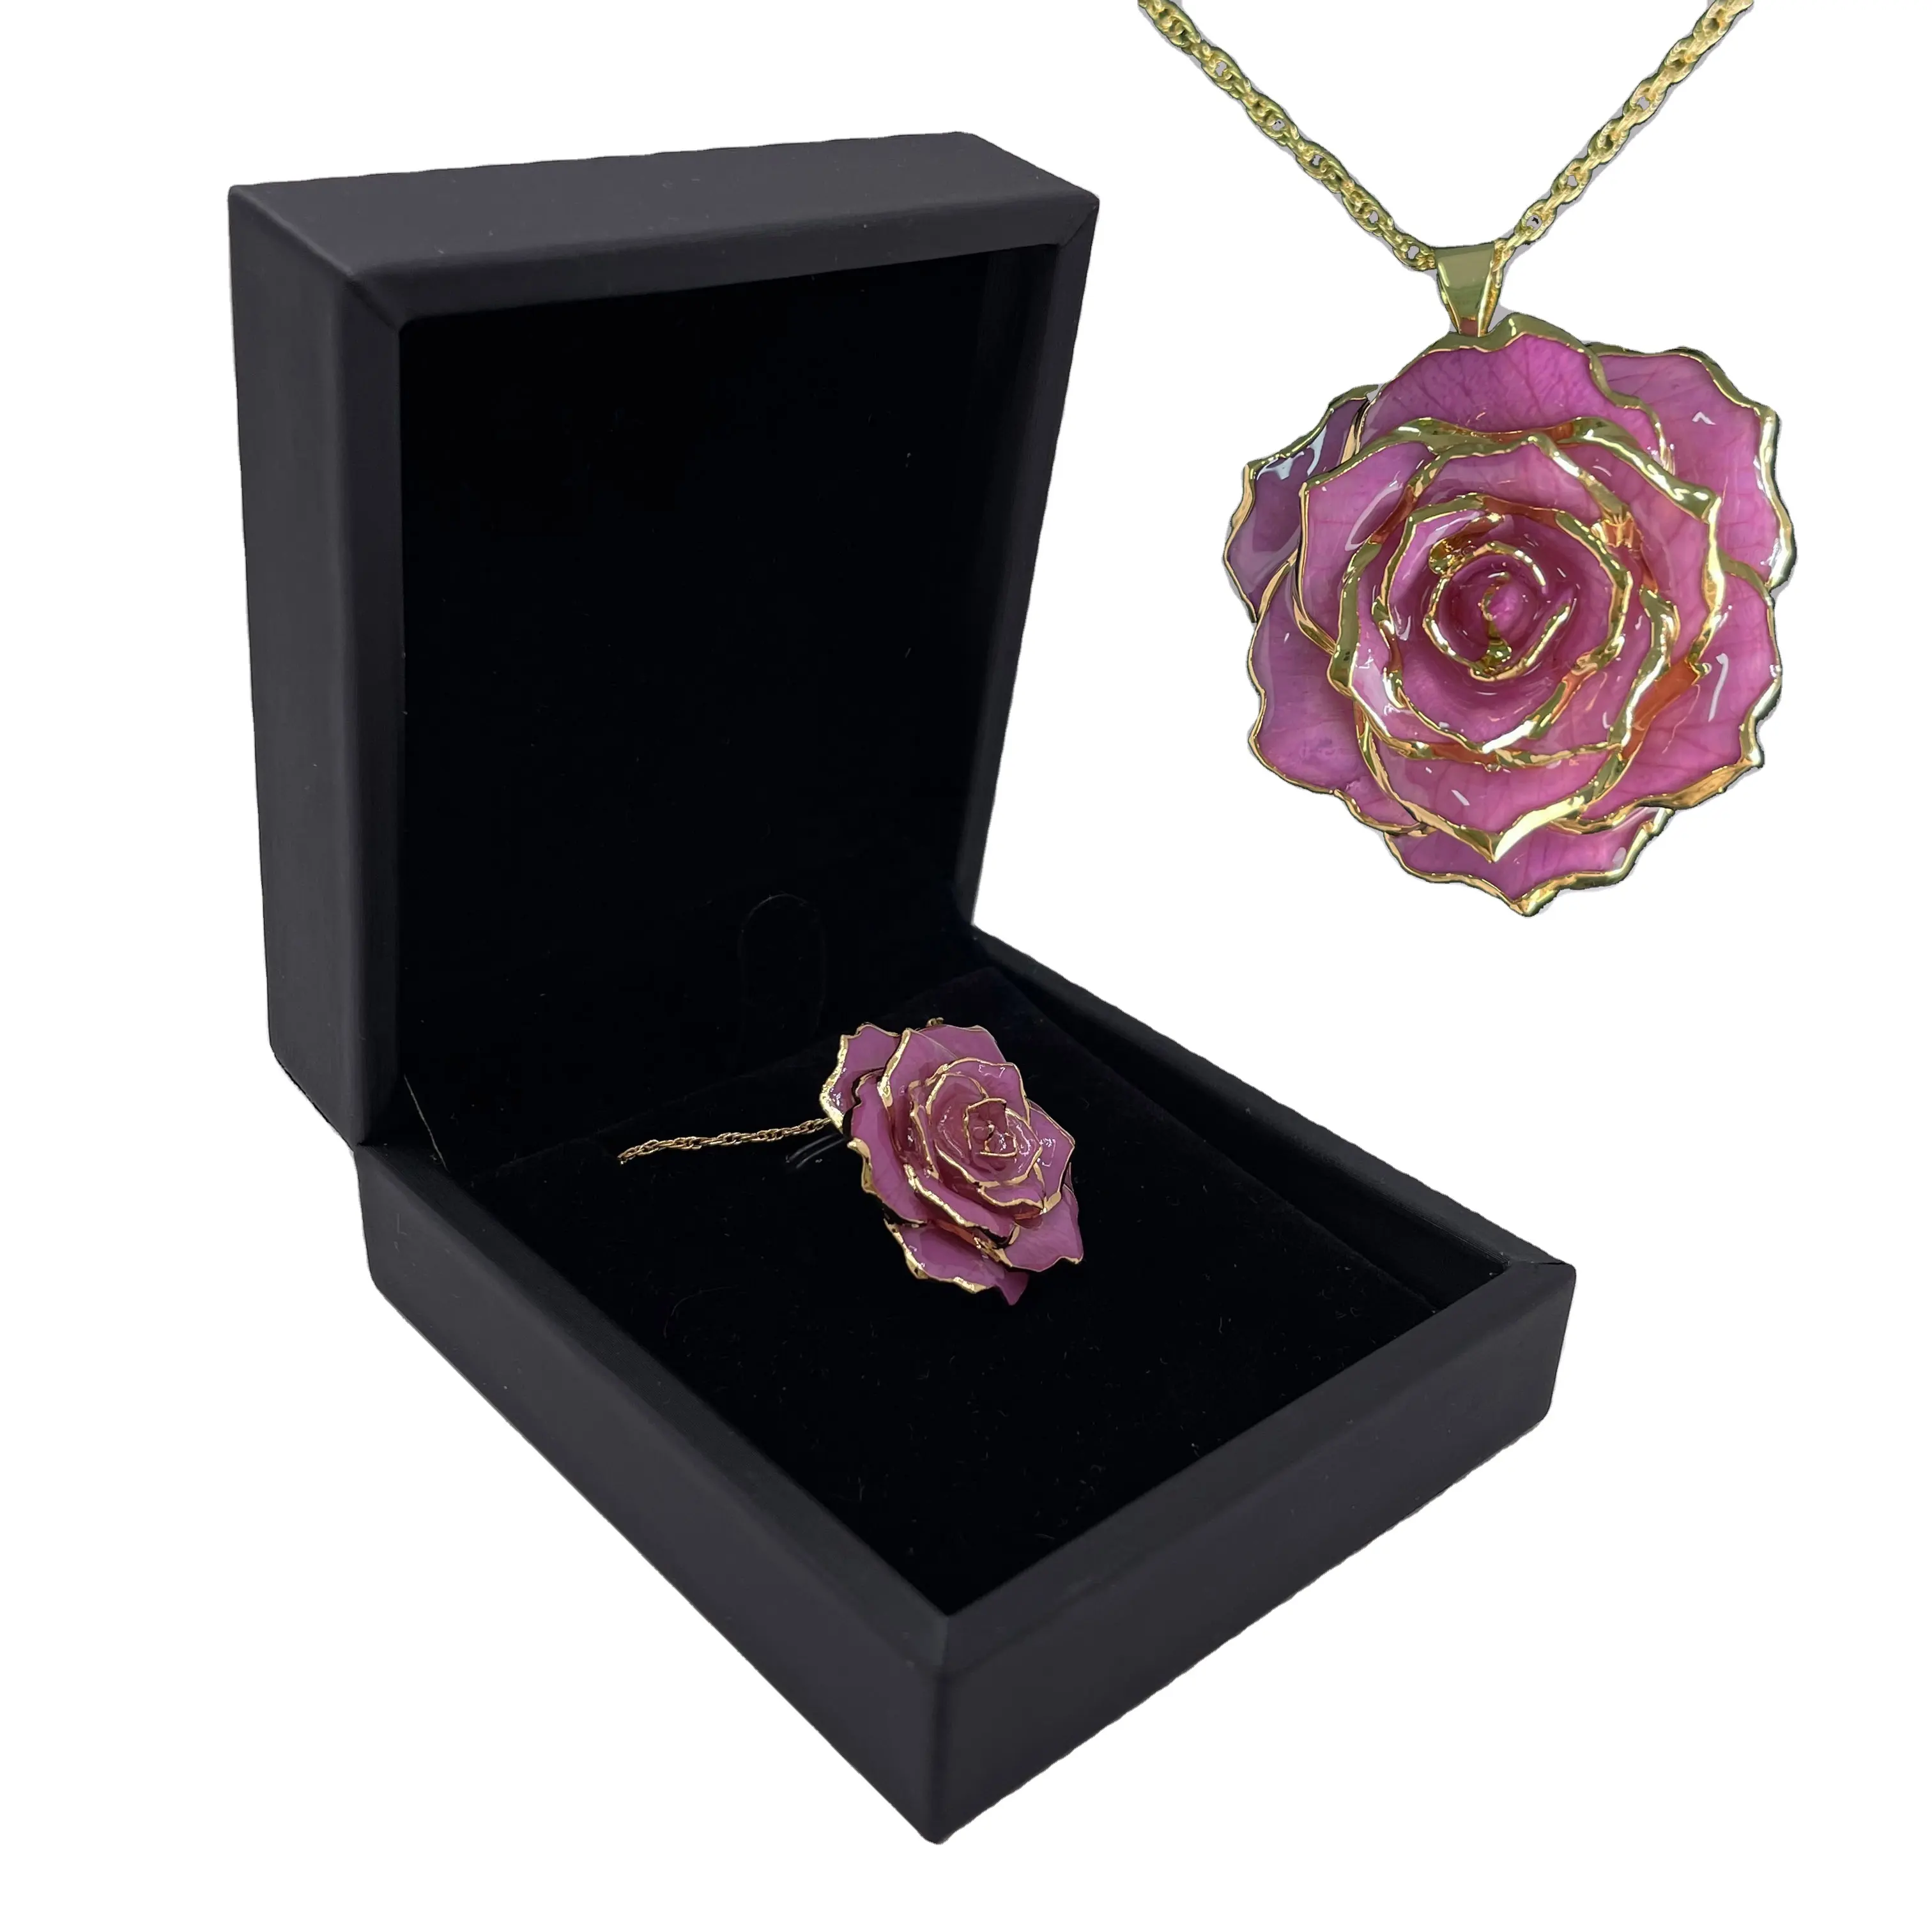 24 Karat vergoldete echte Rose Halskette Handmade Craft Natur blumen schmuck Lavendel Farbe Halskette Romantische Geschenke für Damen